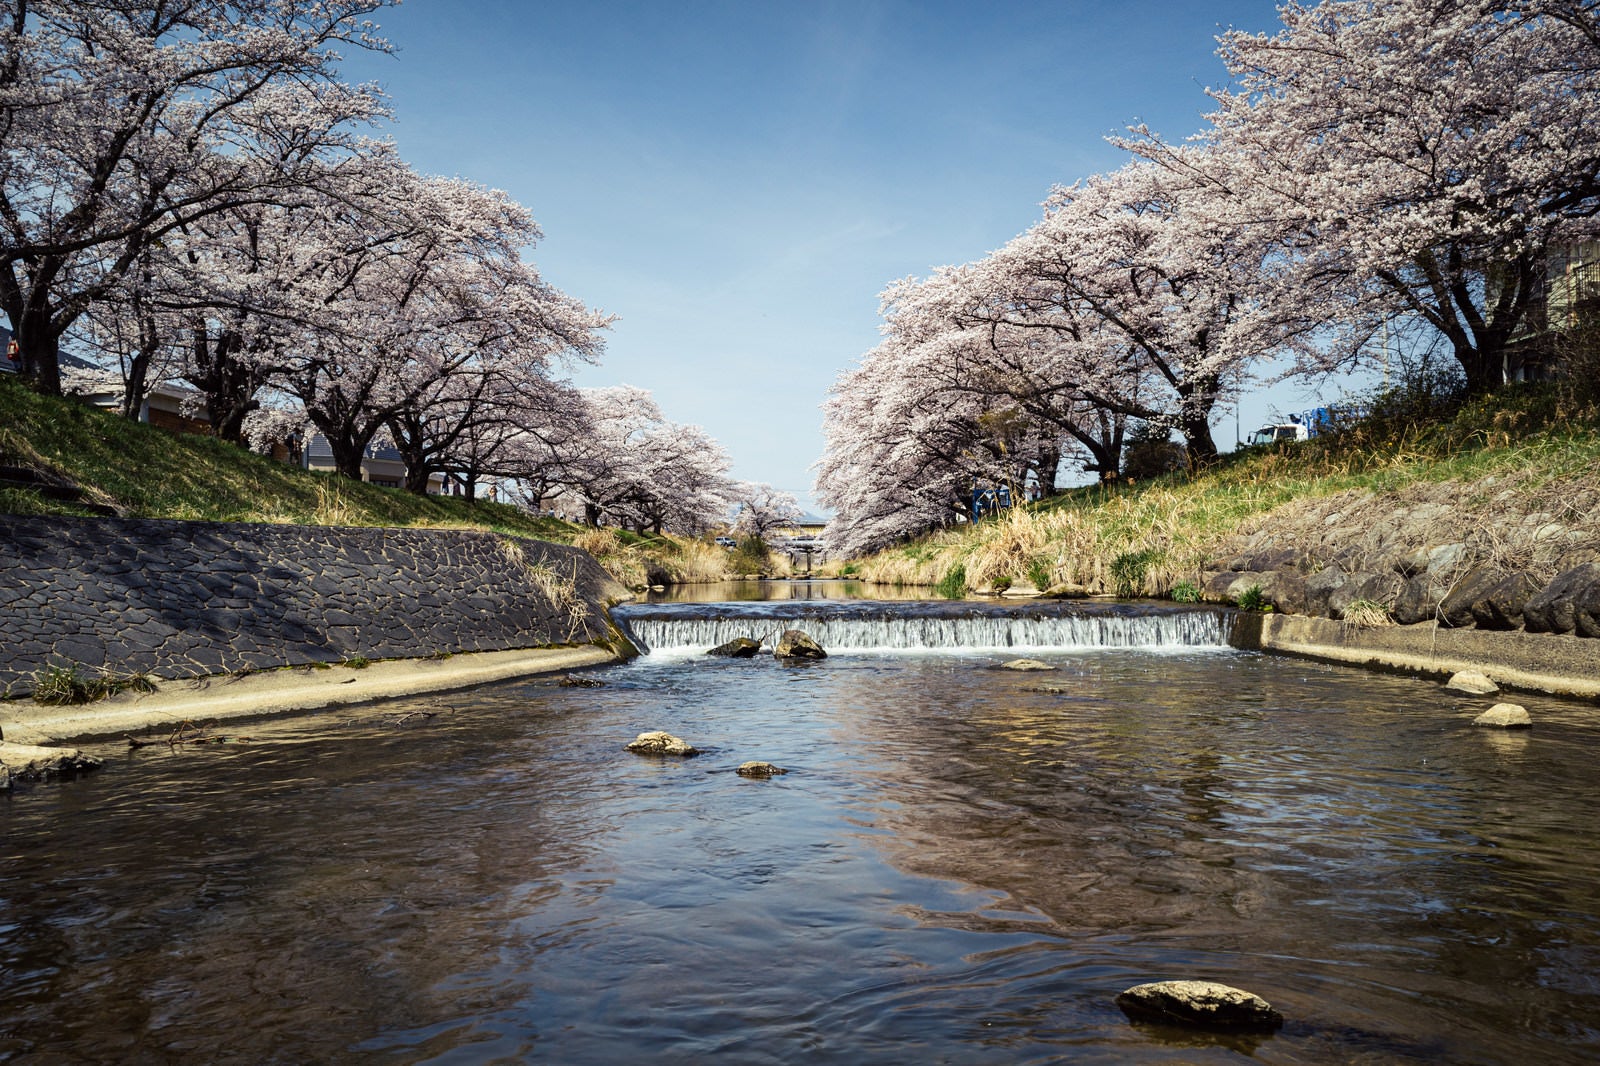 「藤田川と両岸に咲く桜並木」の写真